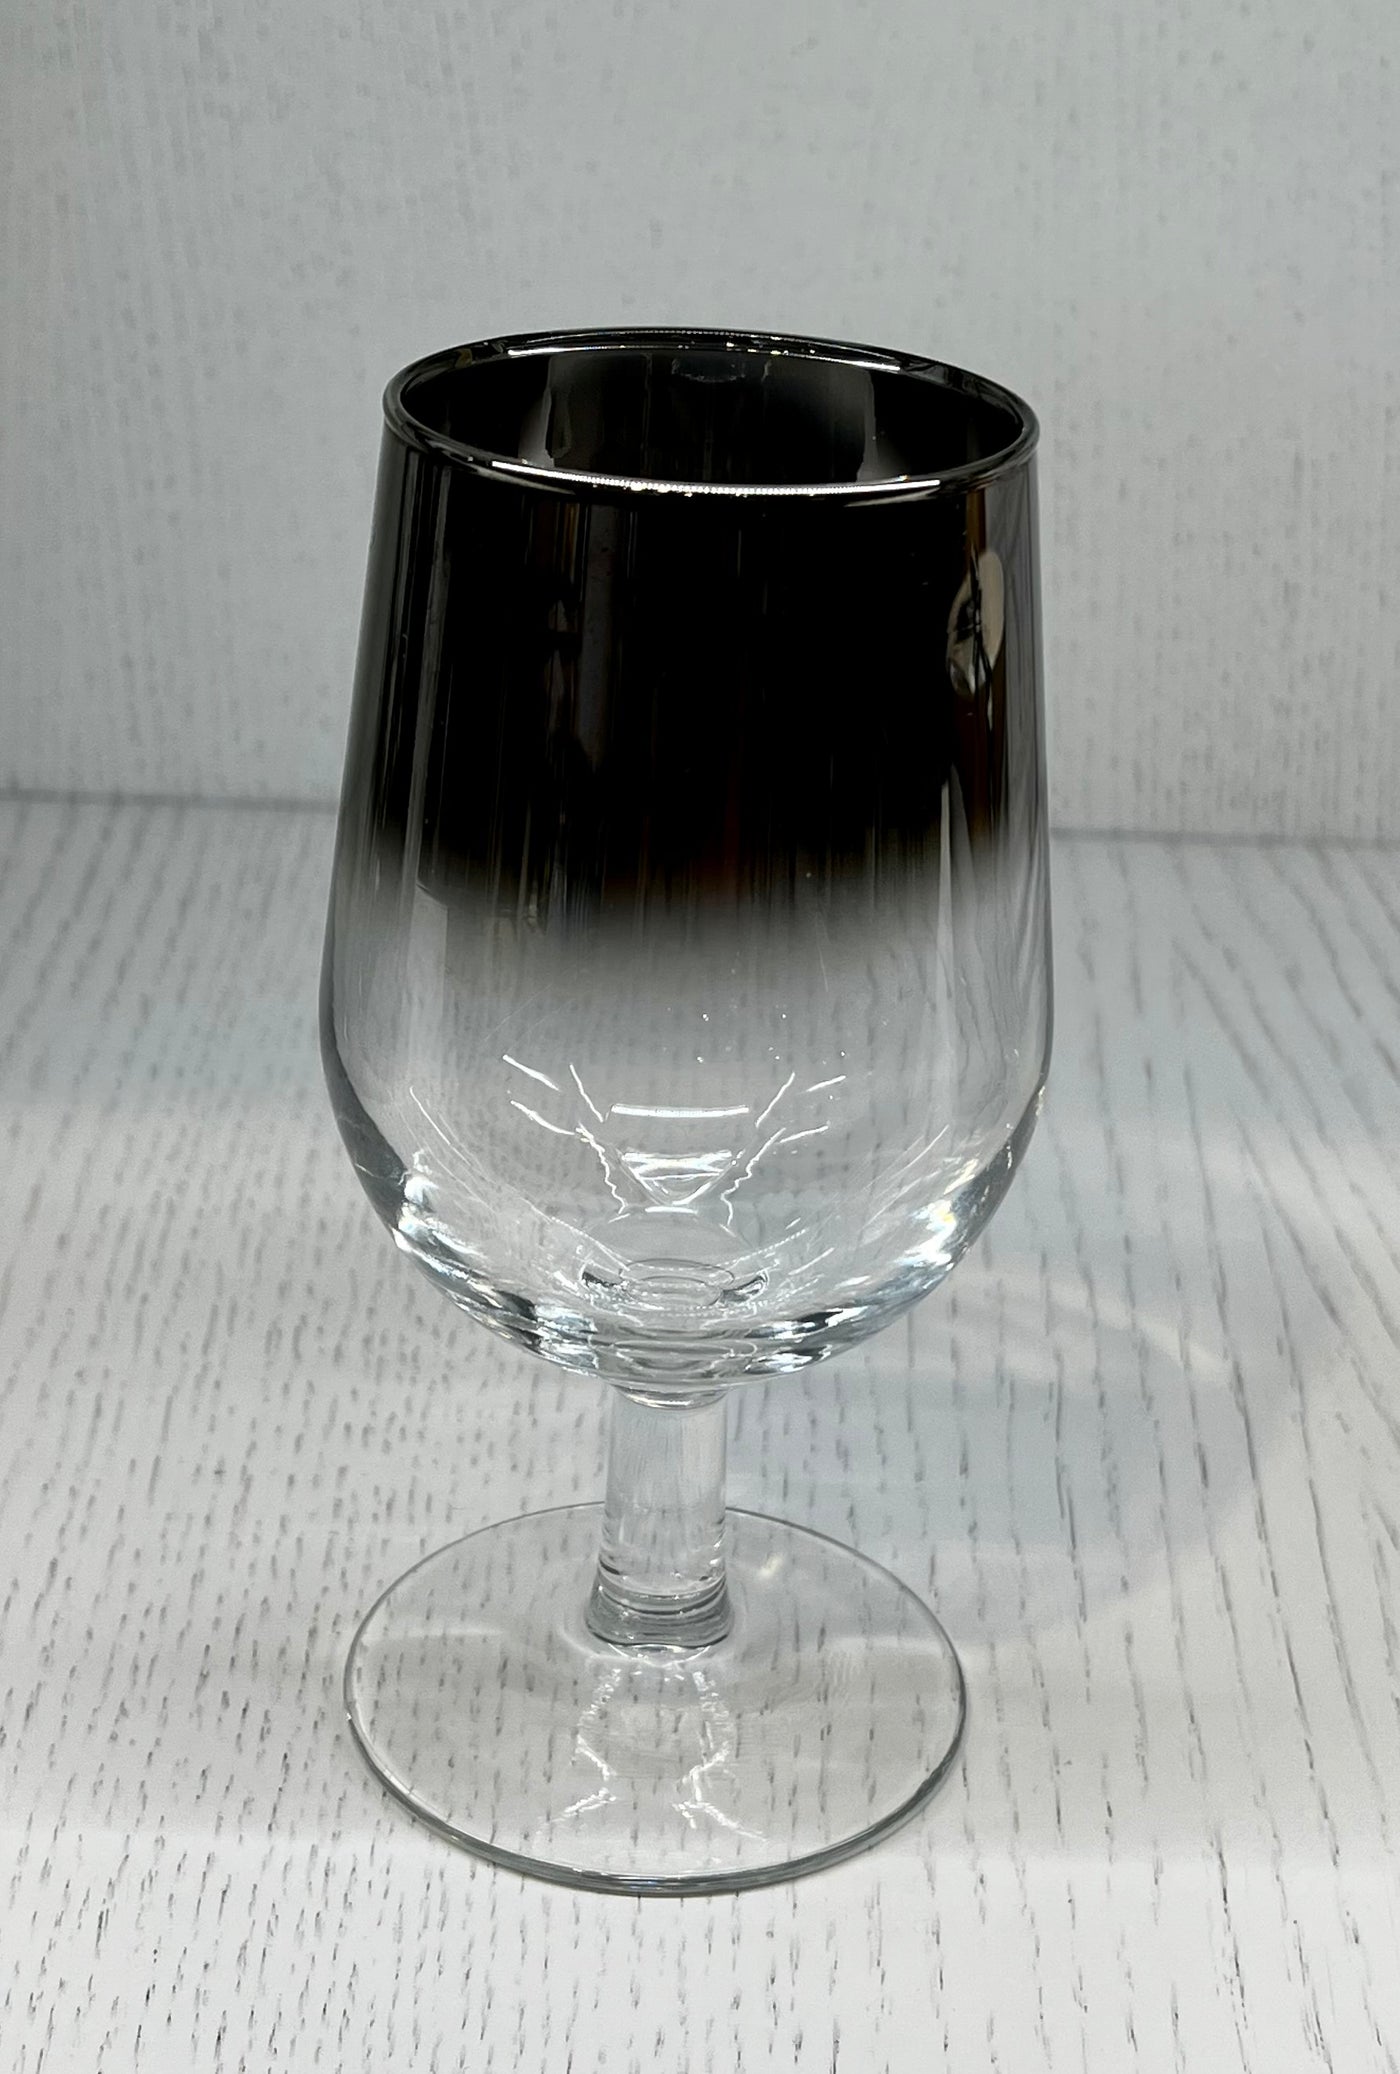 DOROTHY THORPE VINTAGE WINE GLASSES - SET OF 6